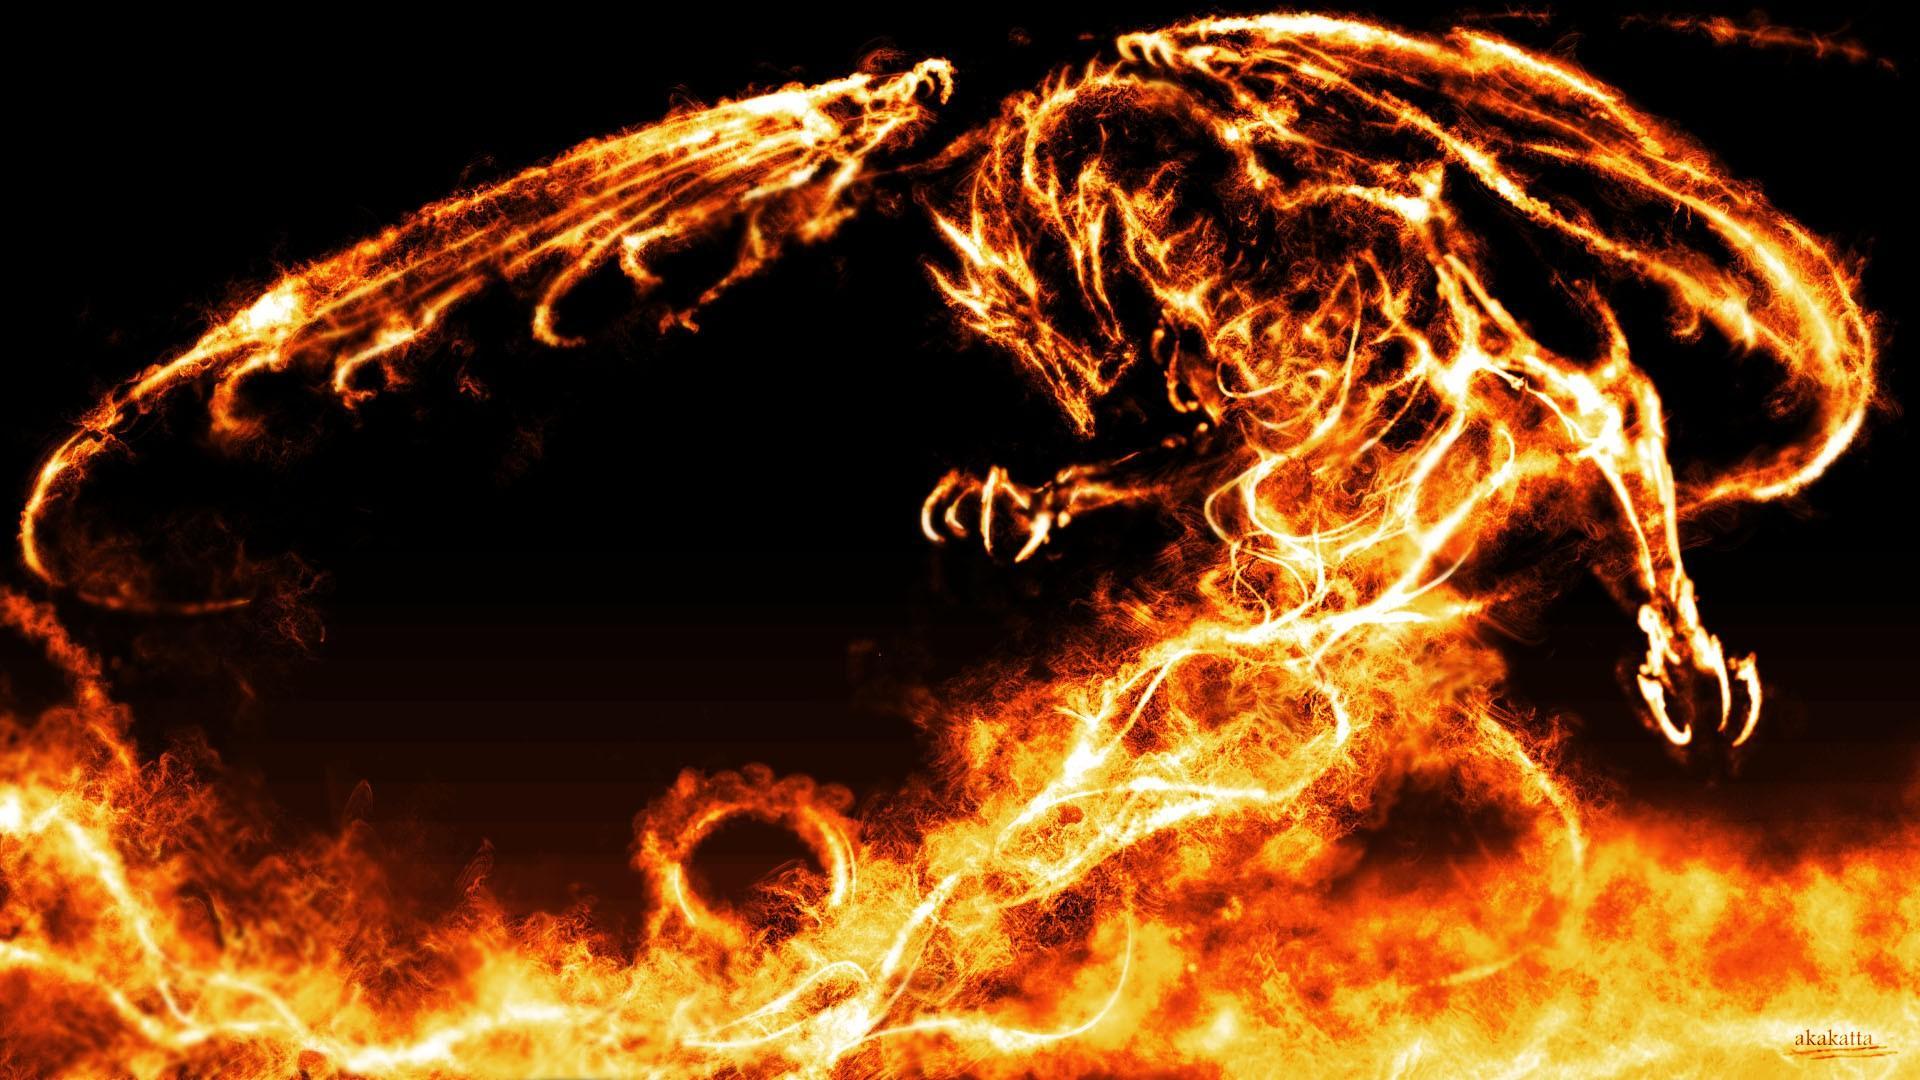 Fire Dragon Wallpapers - Top Những Hình Ảnh Đẹp